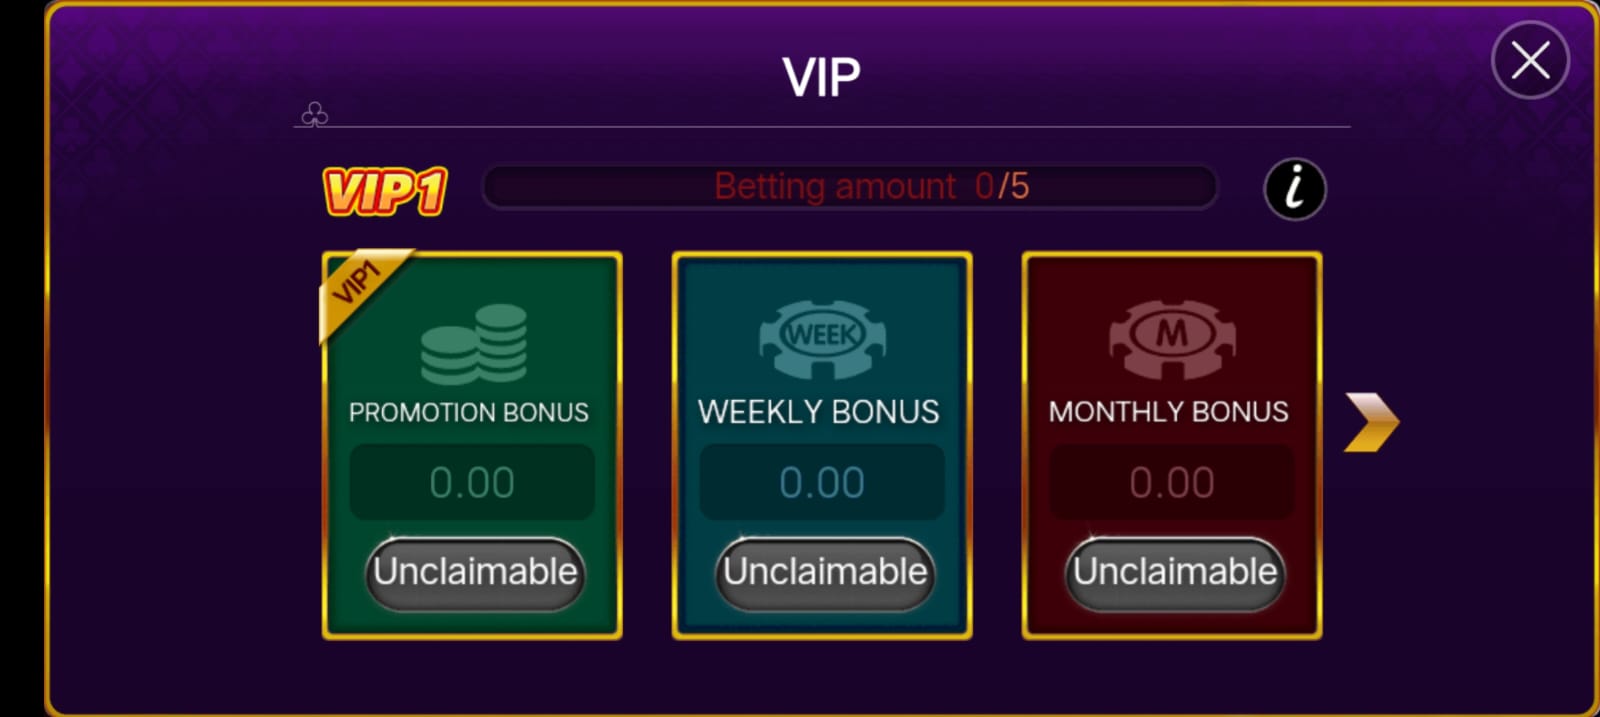 VIP Bonus In Rummy Private App